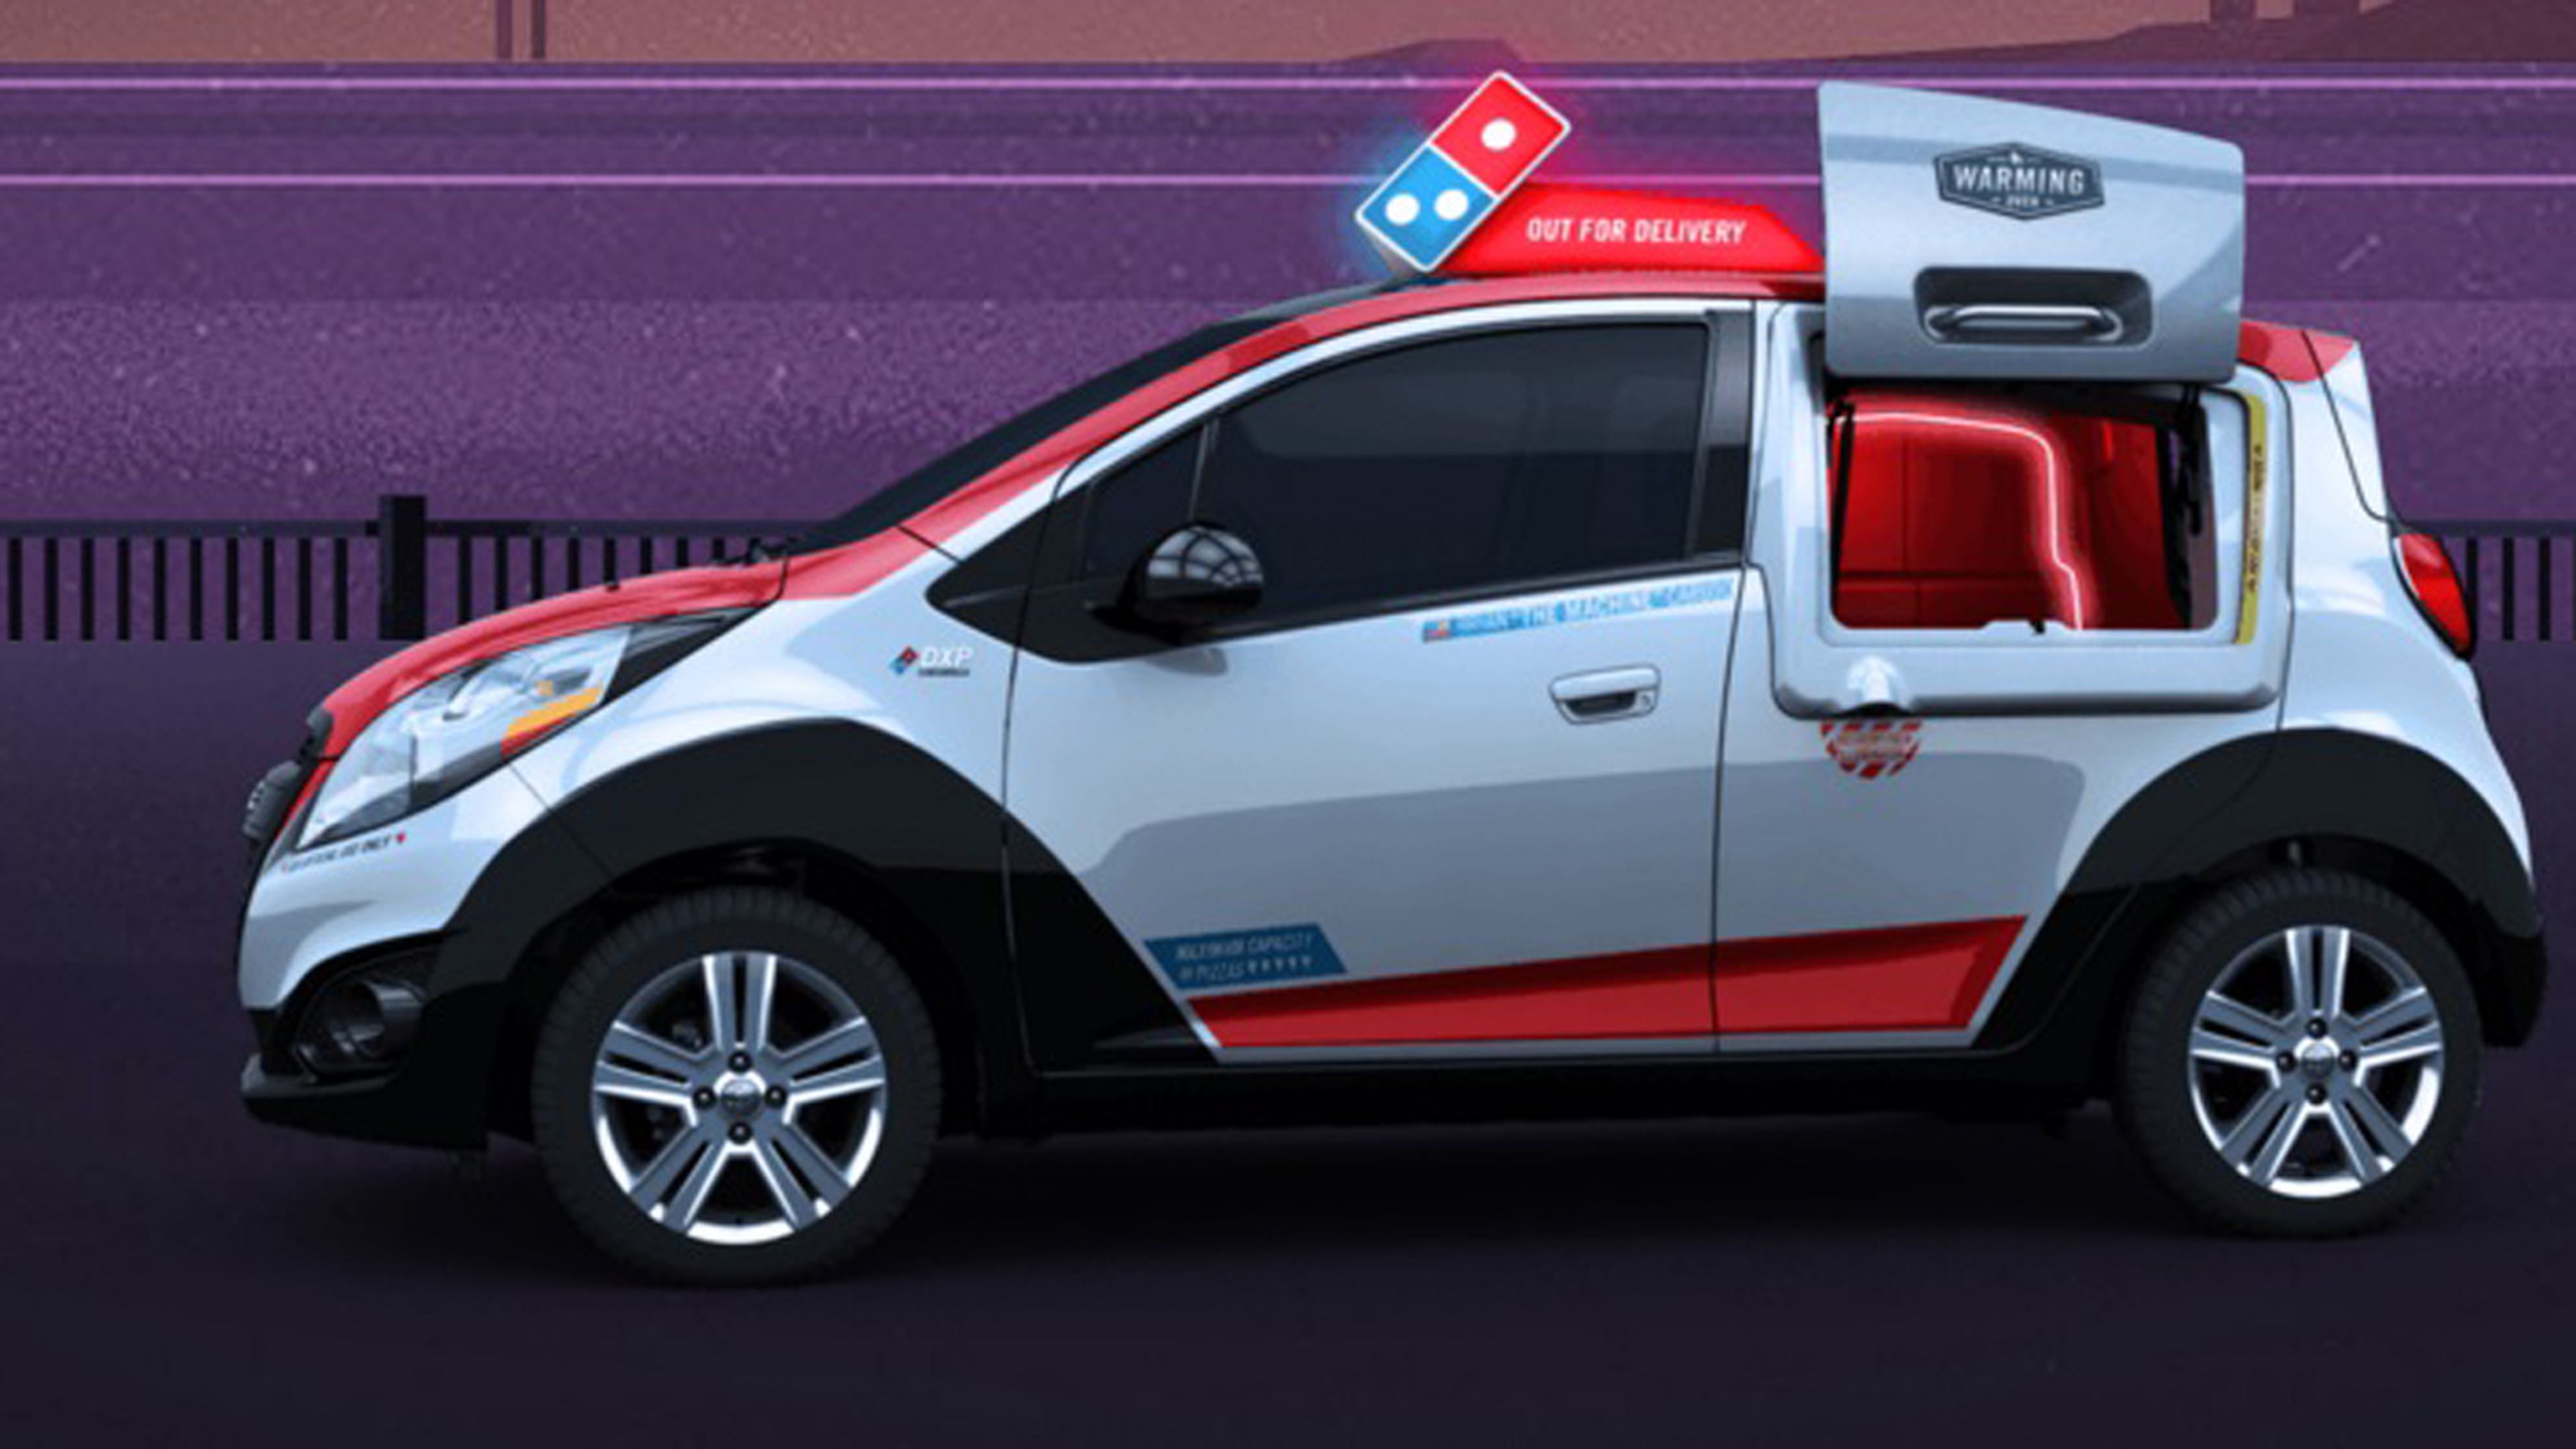 Nuevo vehículo repartidor de Domino's Pizza